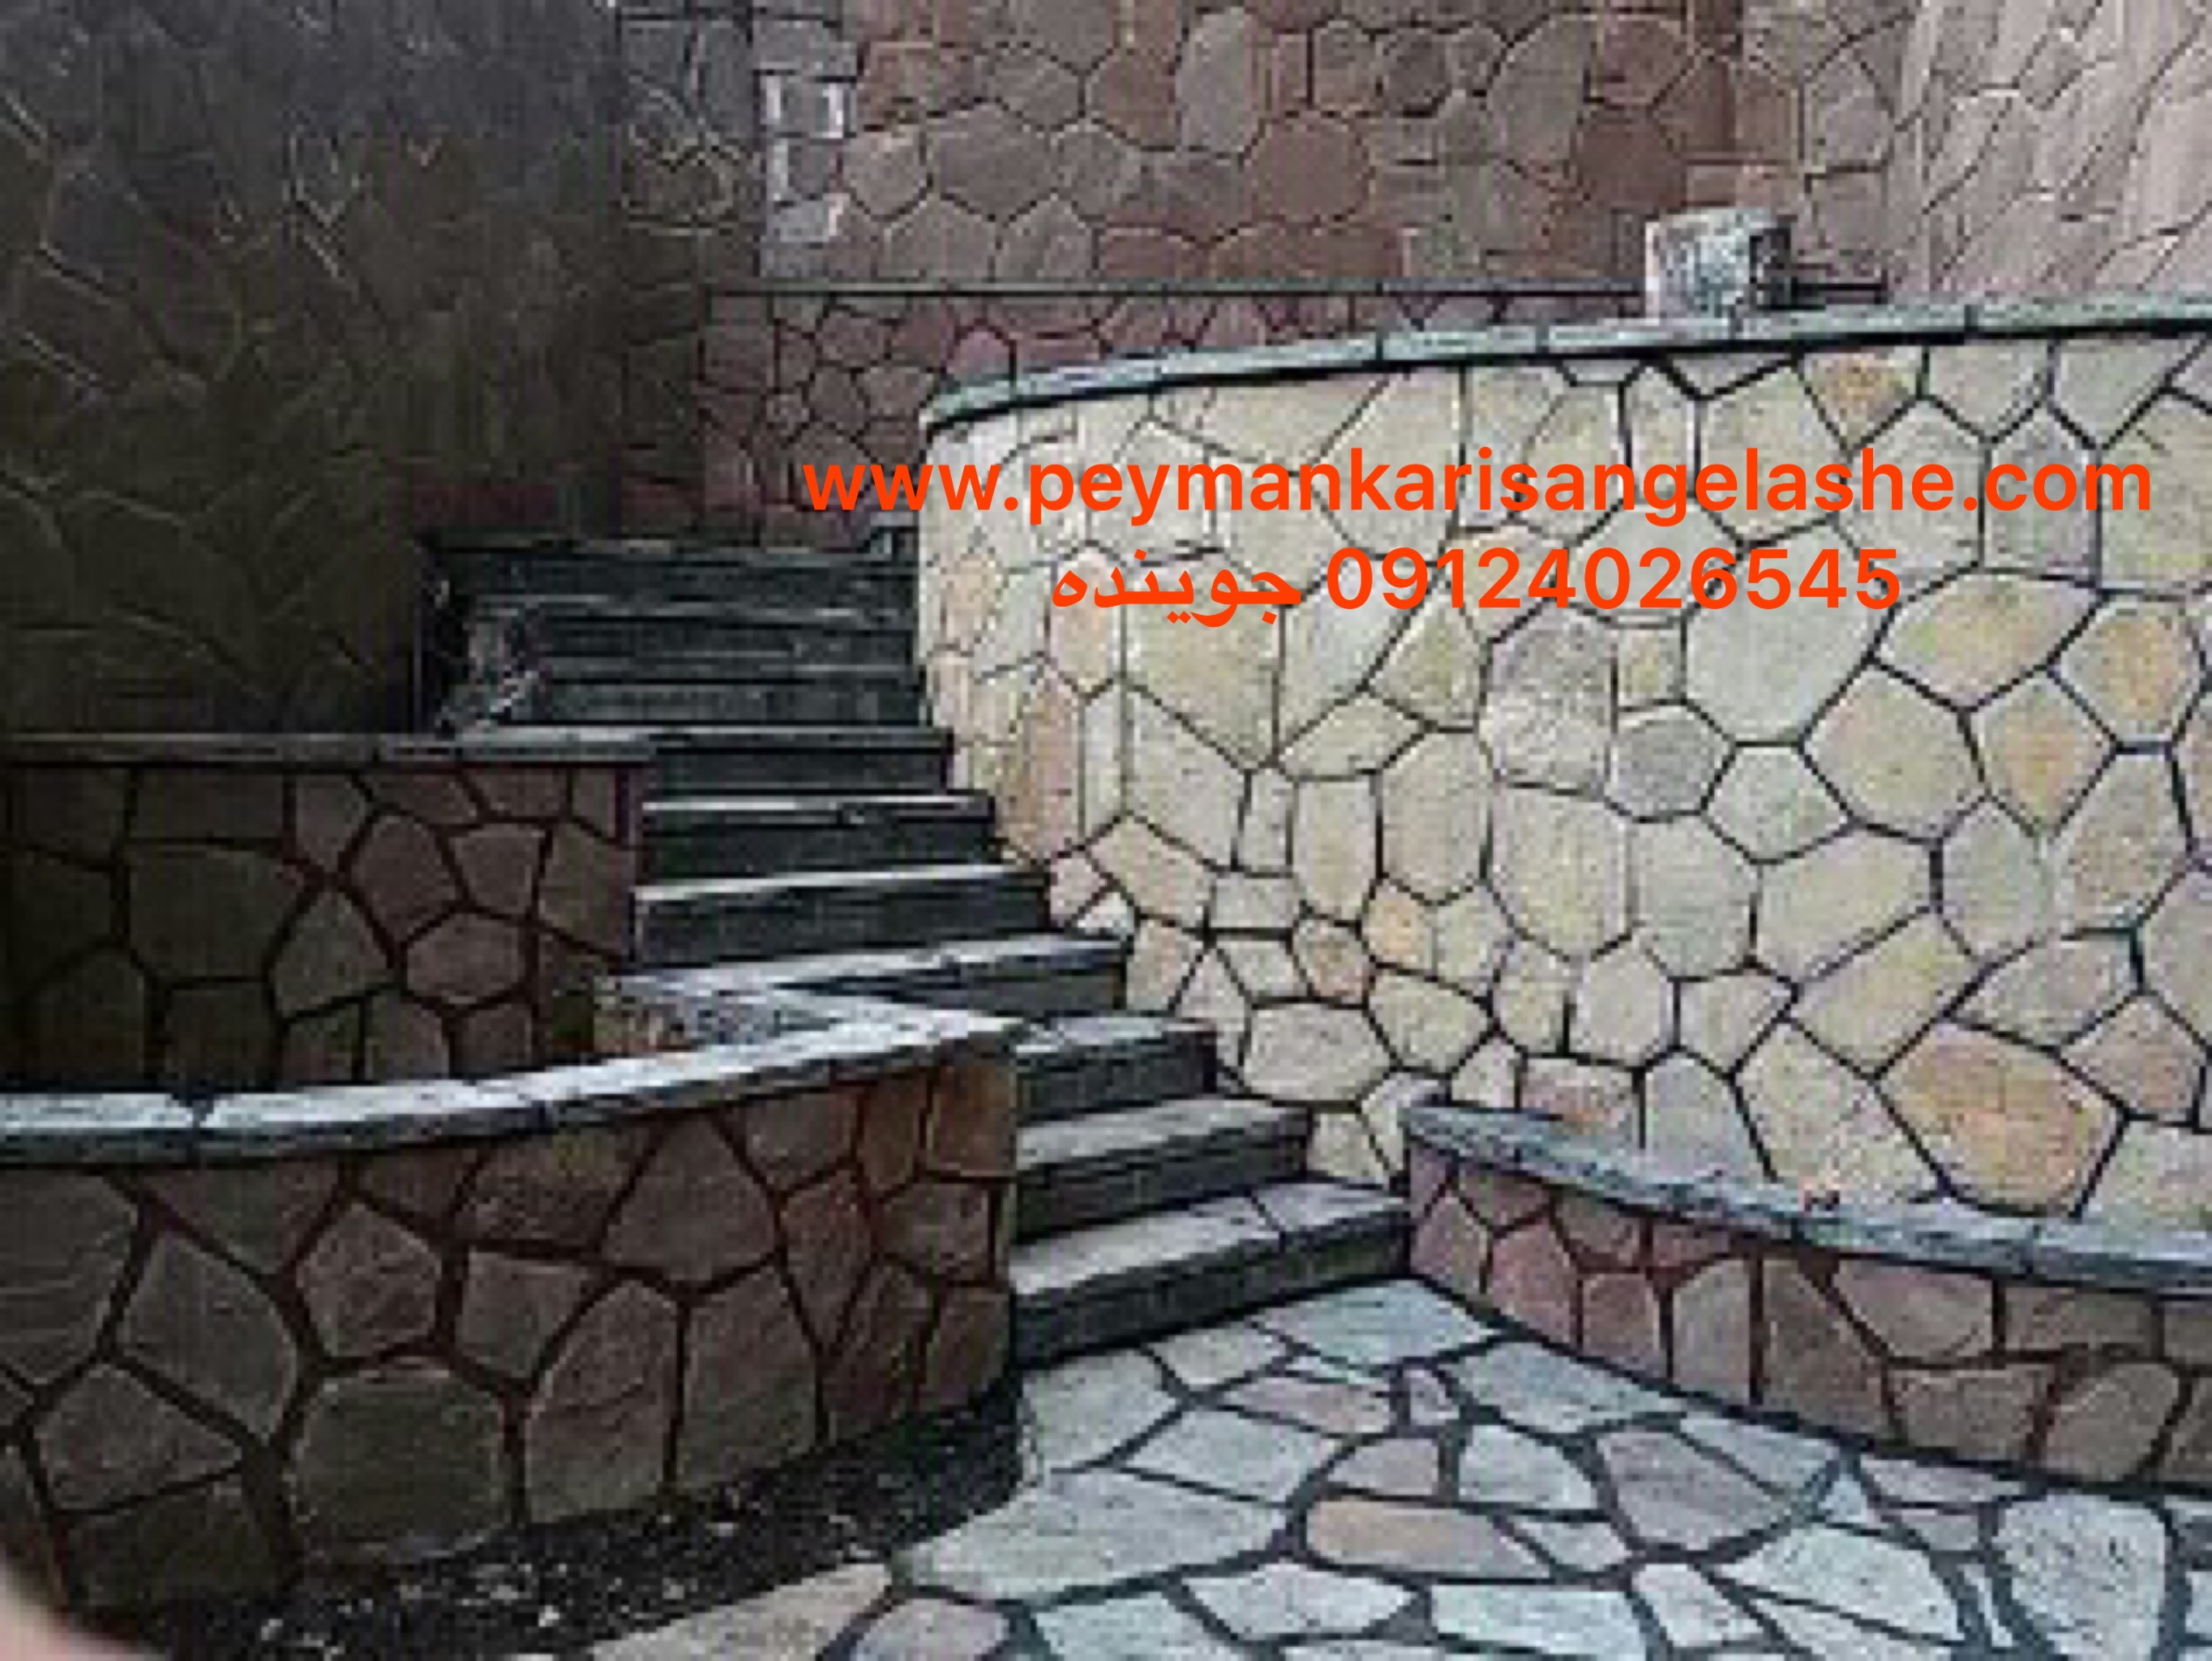 اجرای سنگ لاشه و سنگ مالون و سنگ ورقه ای برای دیوارهای داخل محوطه و ایجاد پله ها و درپوش ها و باغچه ها با استفاده از سنگ لاشه و سنگ مالون اجرا شده است 